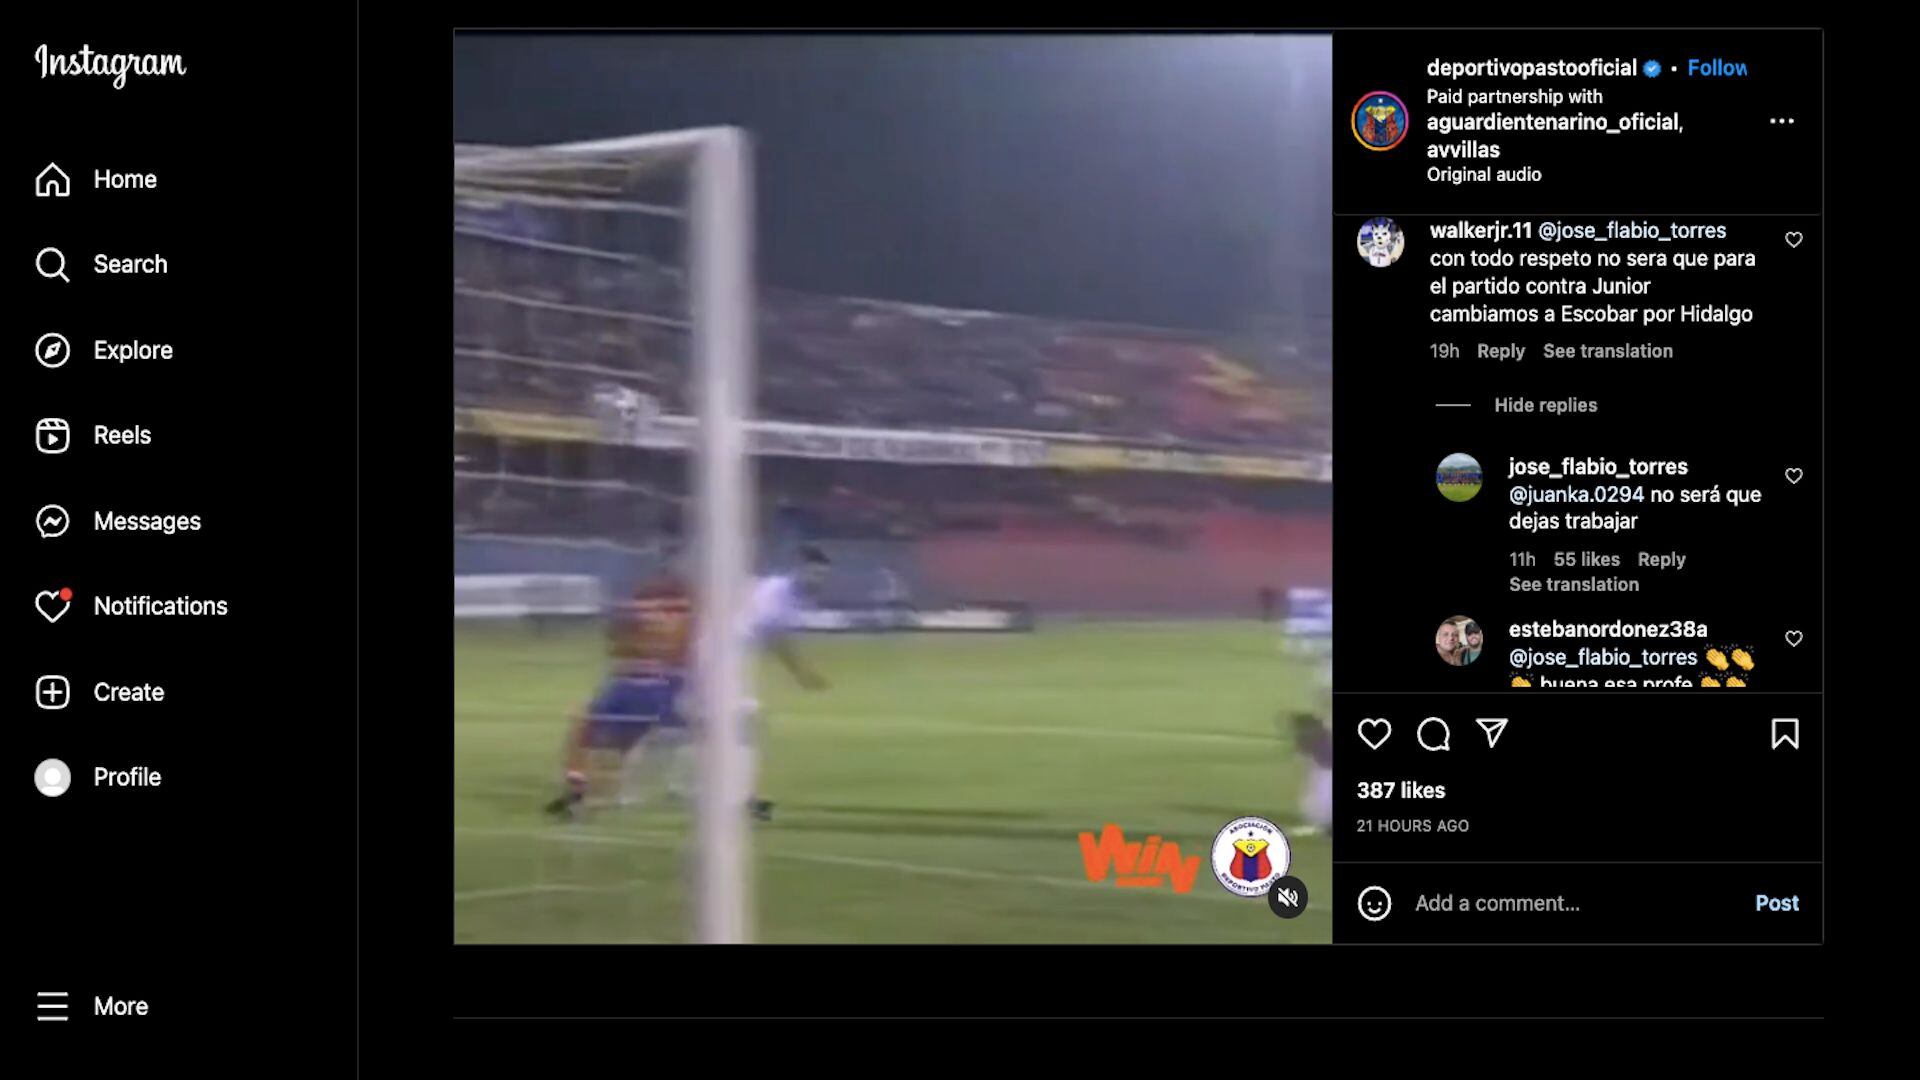 Flabio Torres y su respuesta a un hincha de Deportivo Pasto en Instagram / (Instagram: deportivopastooficial)